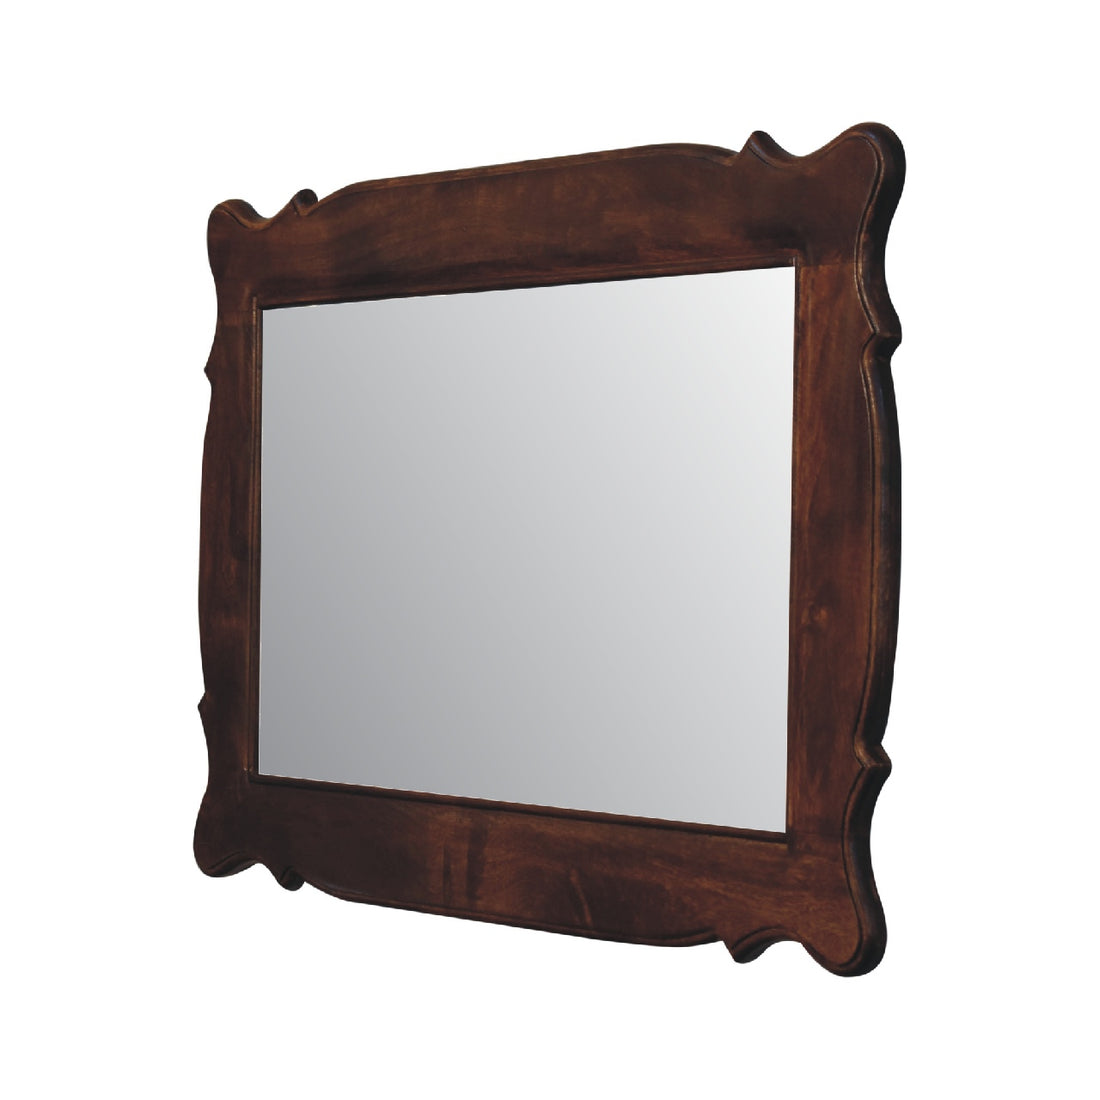 Chestnut Oblong Mirror Frame